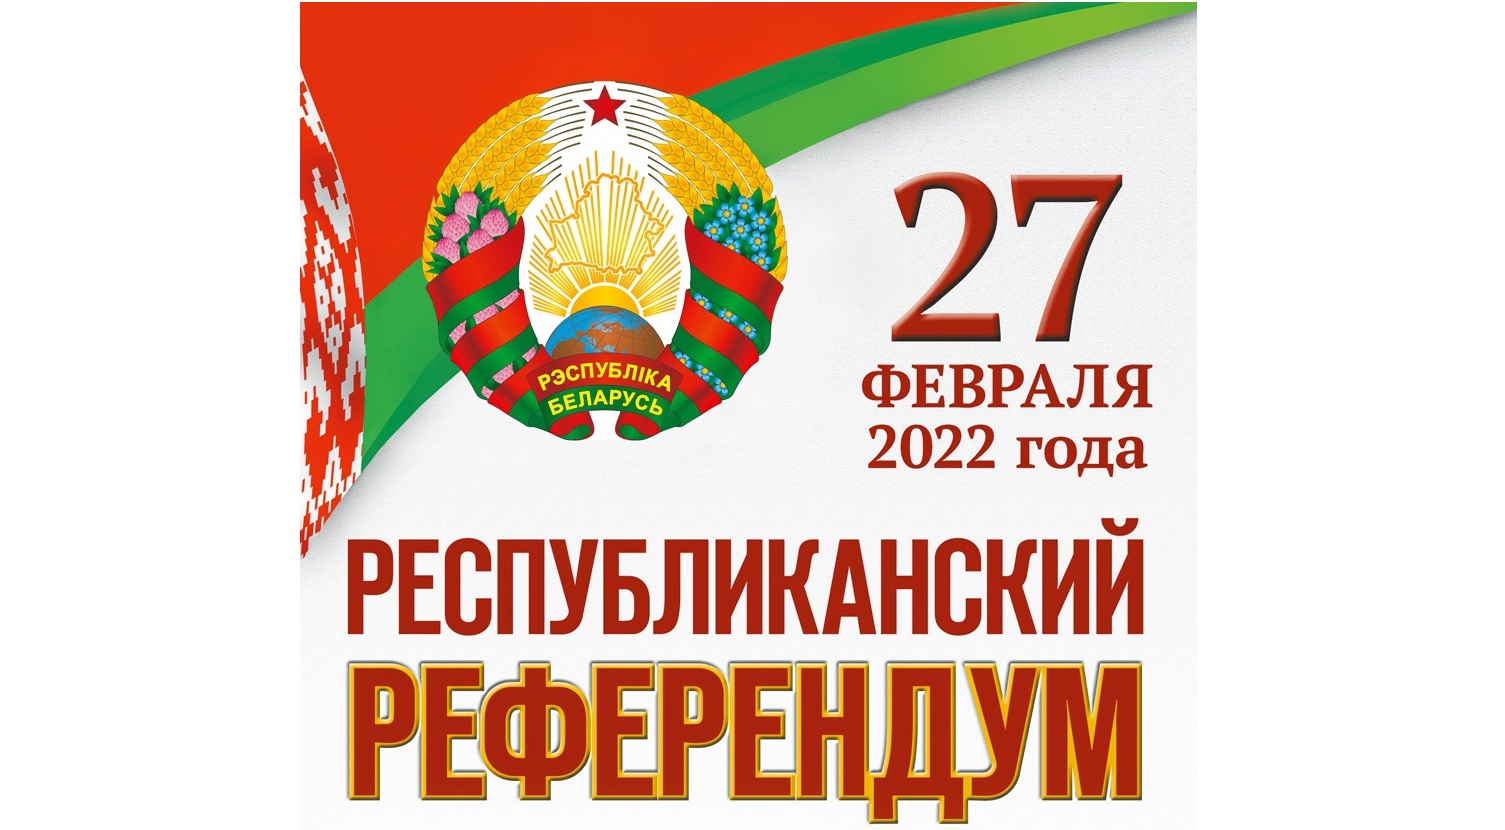 27 февраля 2022 г. Республиканский референдум по вопросу внесения изменений и дополнений в Конституцию Республики Беларусь